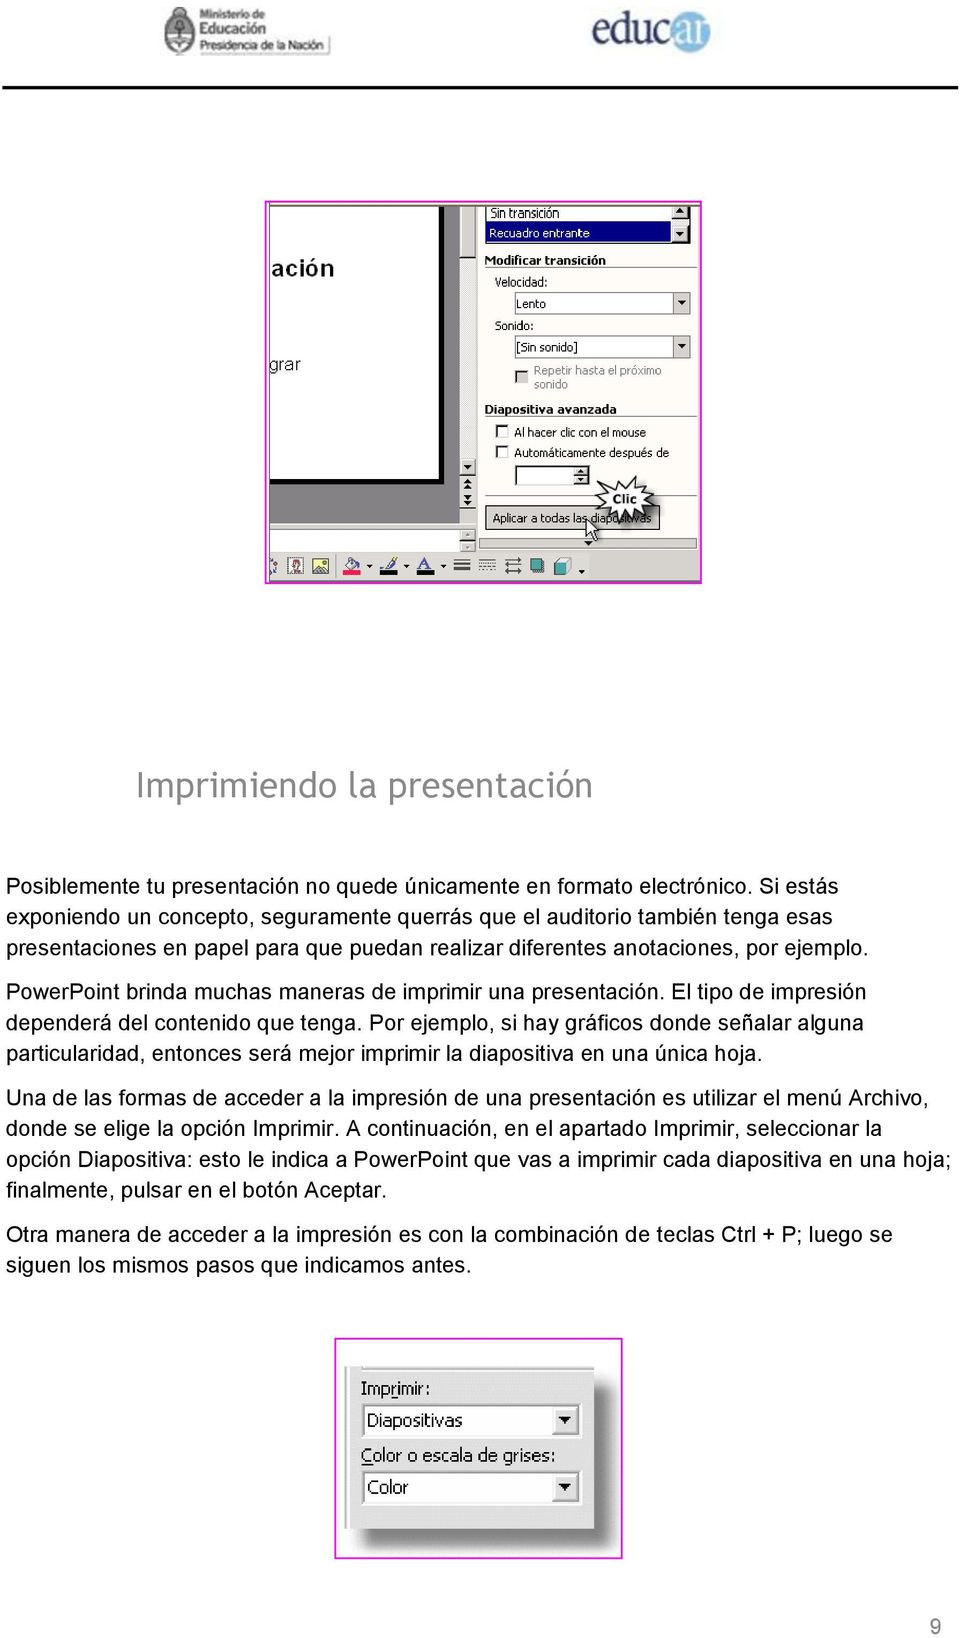 PowerPoint brinda muchas maneras de imprimir una presentación. El tipo de impresión dependerá del contenido que tenga.